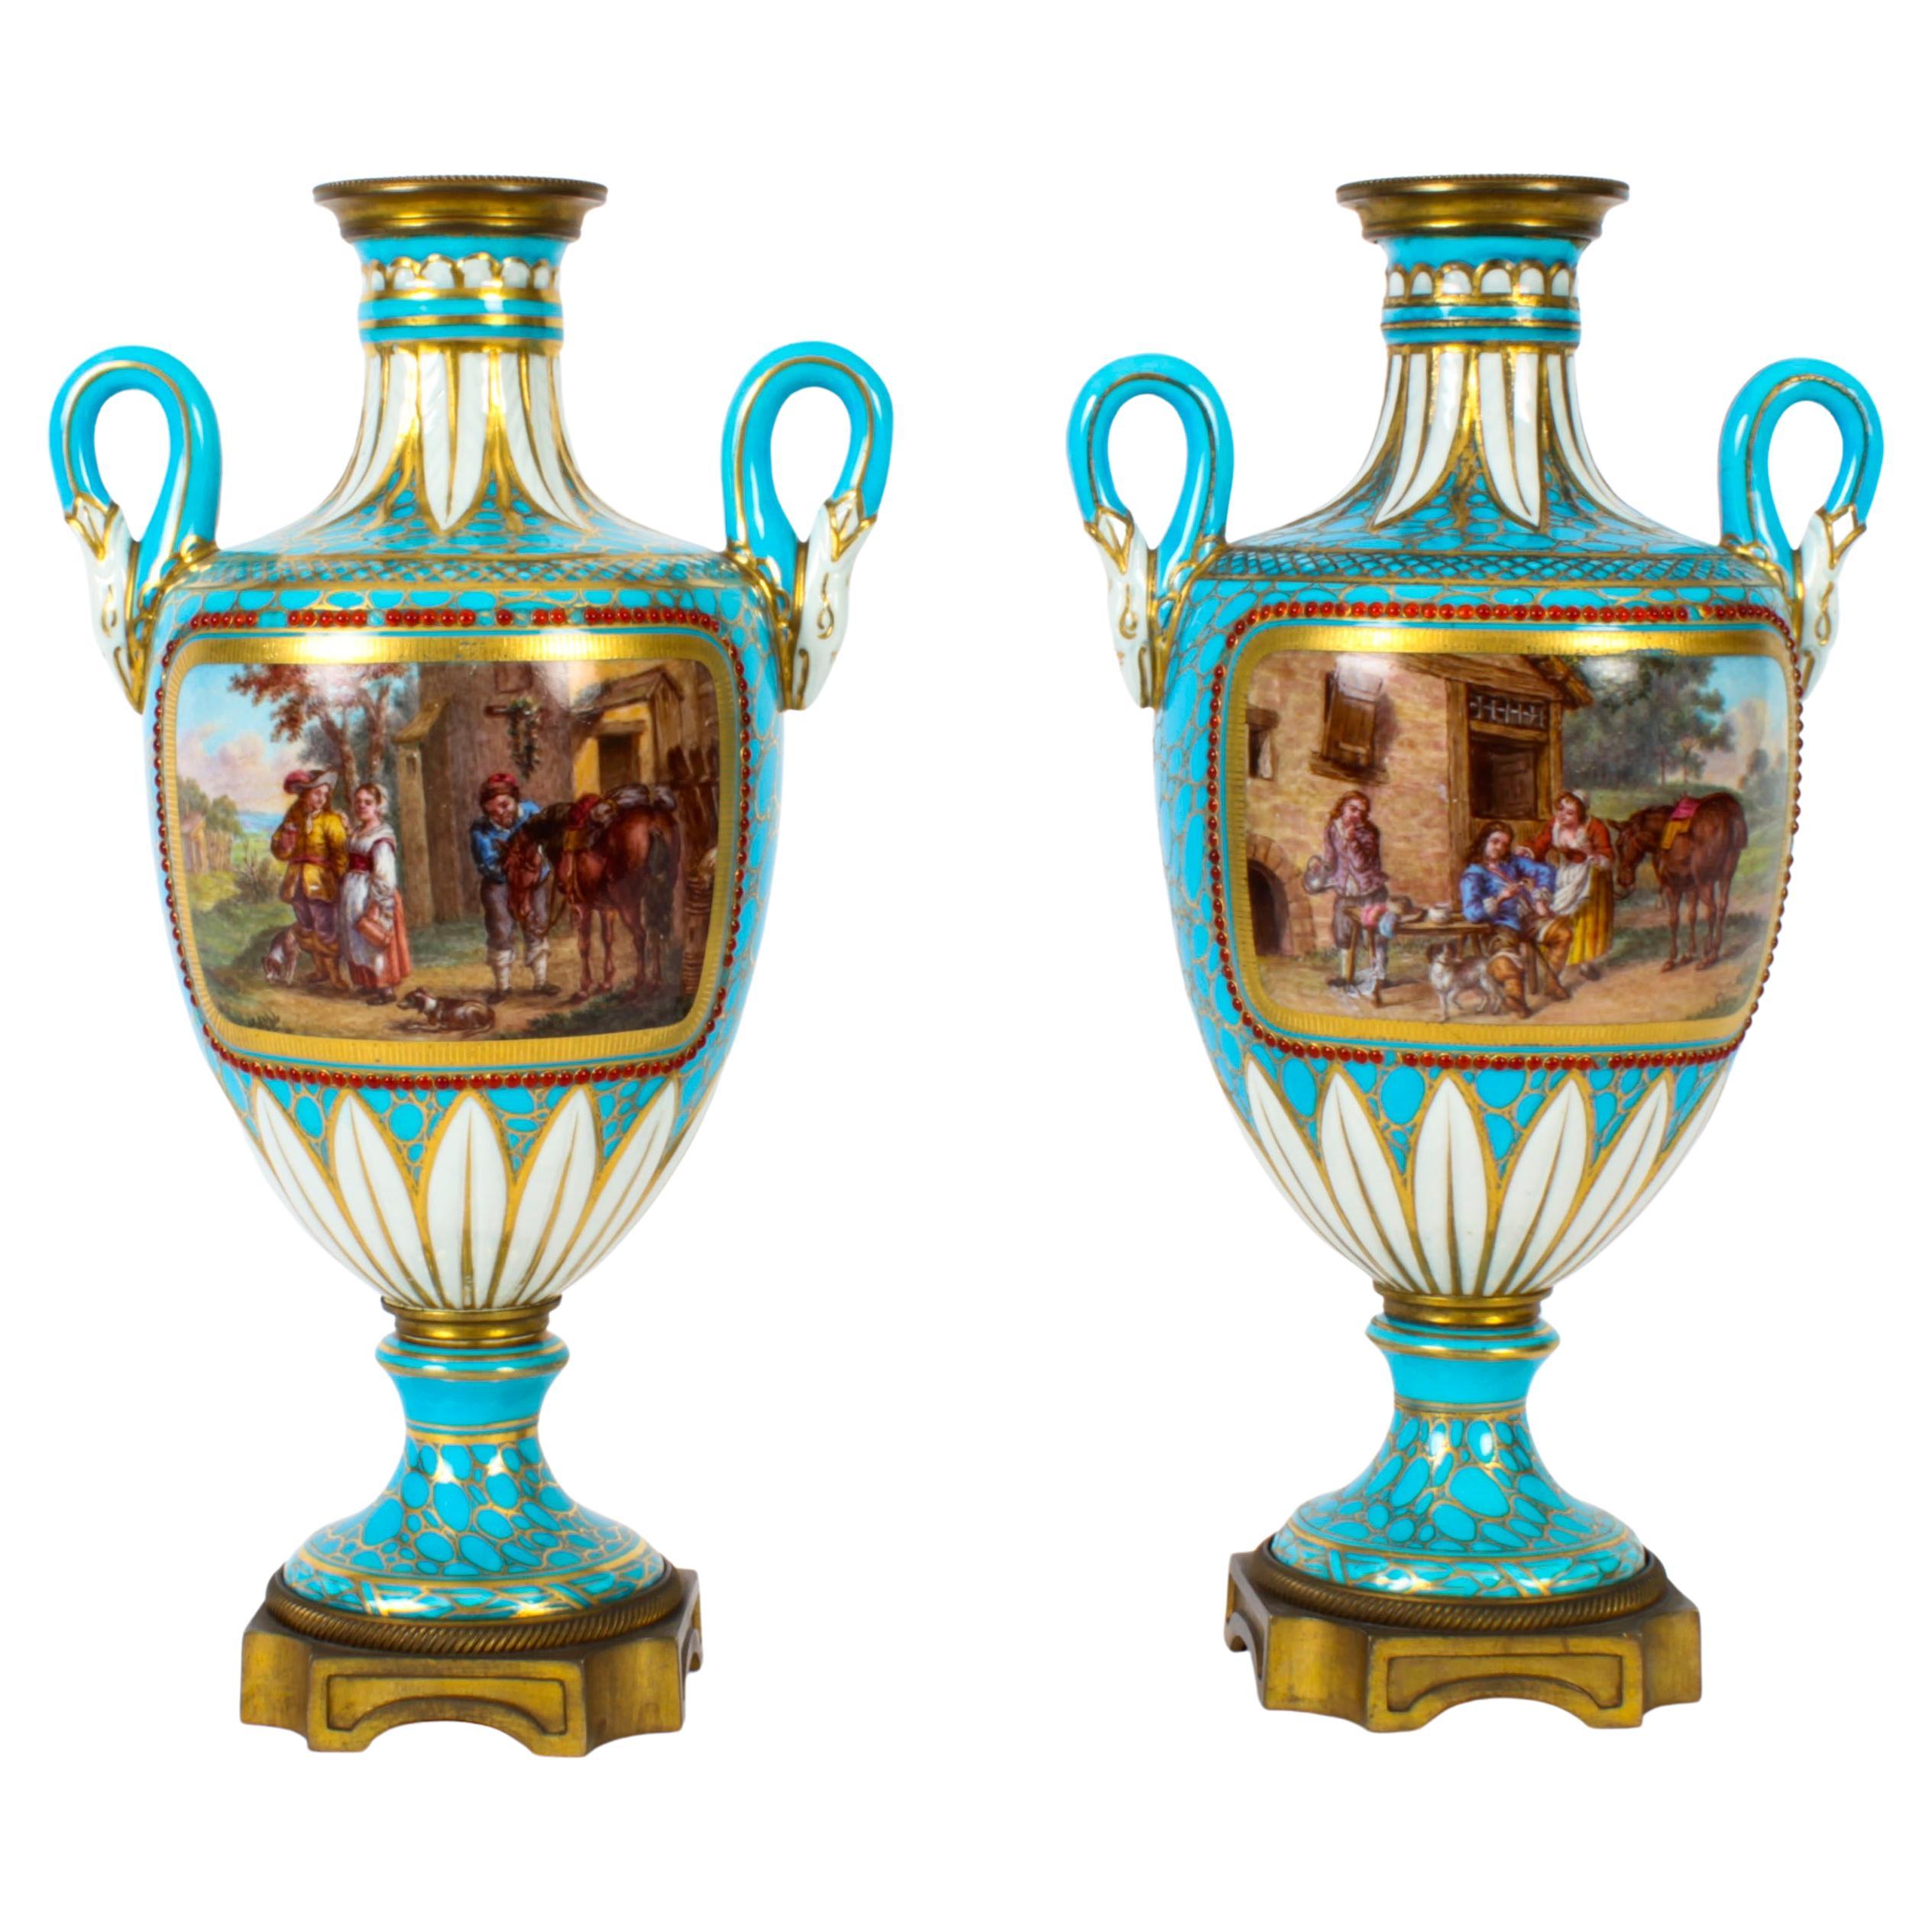 Paire d'urnes françaises anciennes en porcelaine bleu céleste du 19ème siècle